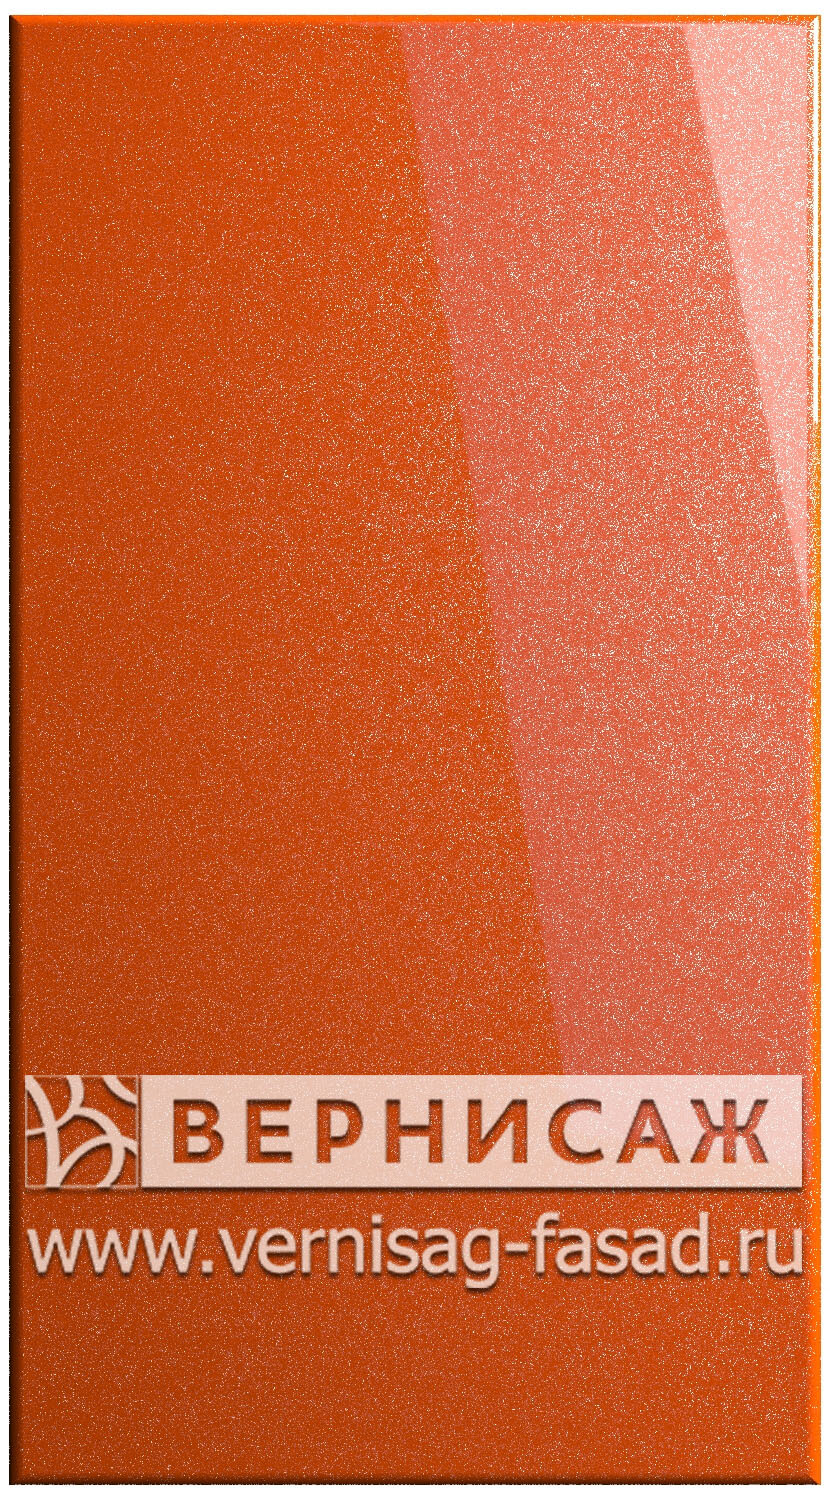 Фасады в пленке ПВХ, Фрезеровка № 15, цвет Сигнал оранж металлик